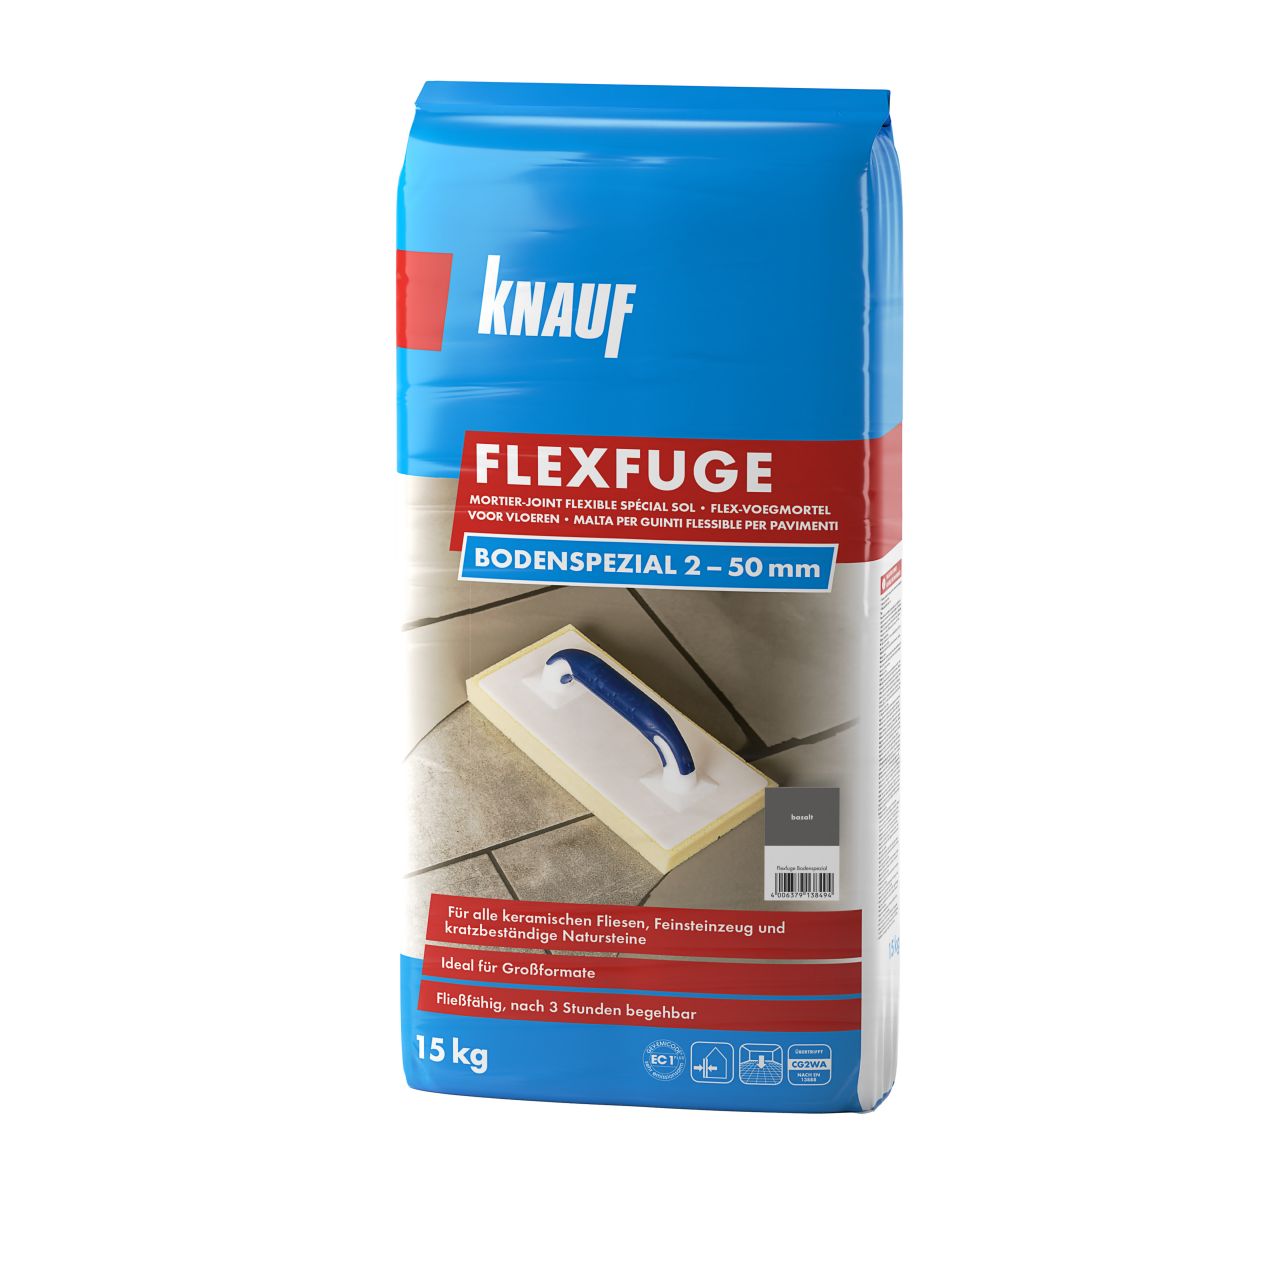 Knauf Fugenmörtel Flexfuge Bodenspezial 2 - 50 mm basalt 15 kg von Knauf